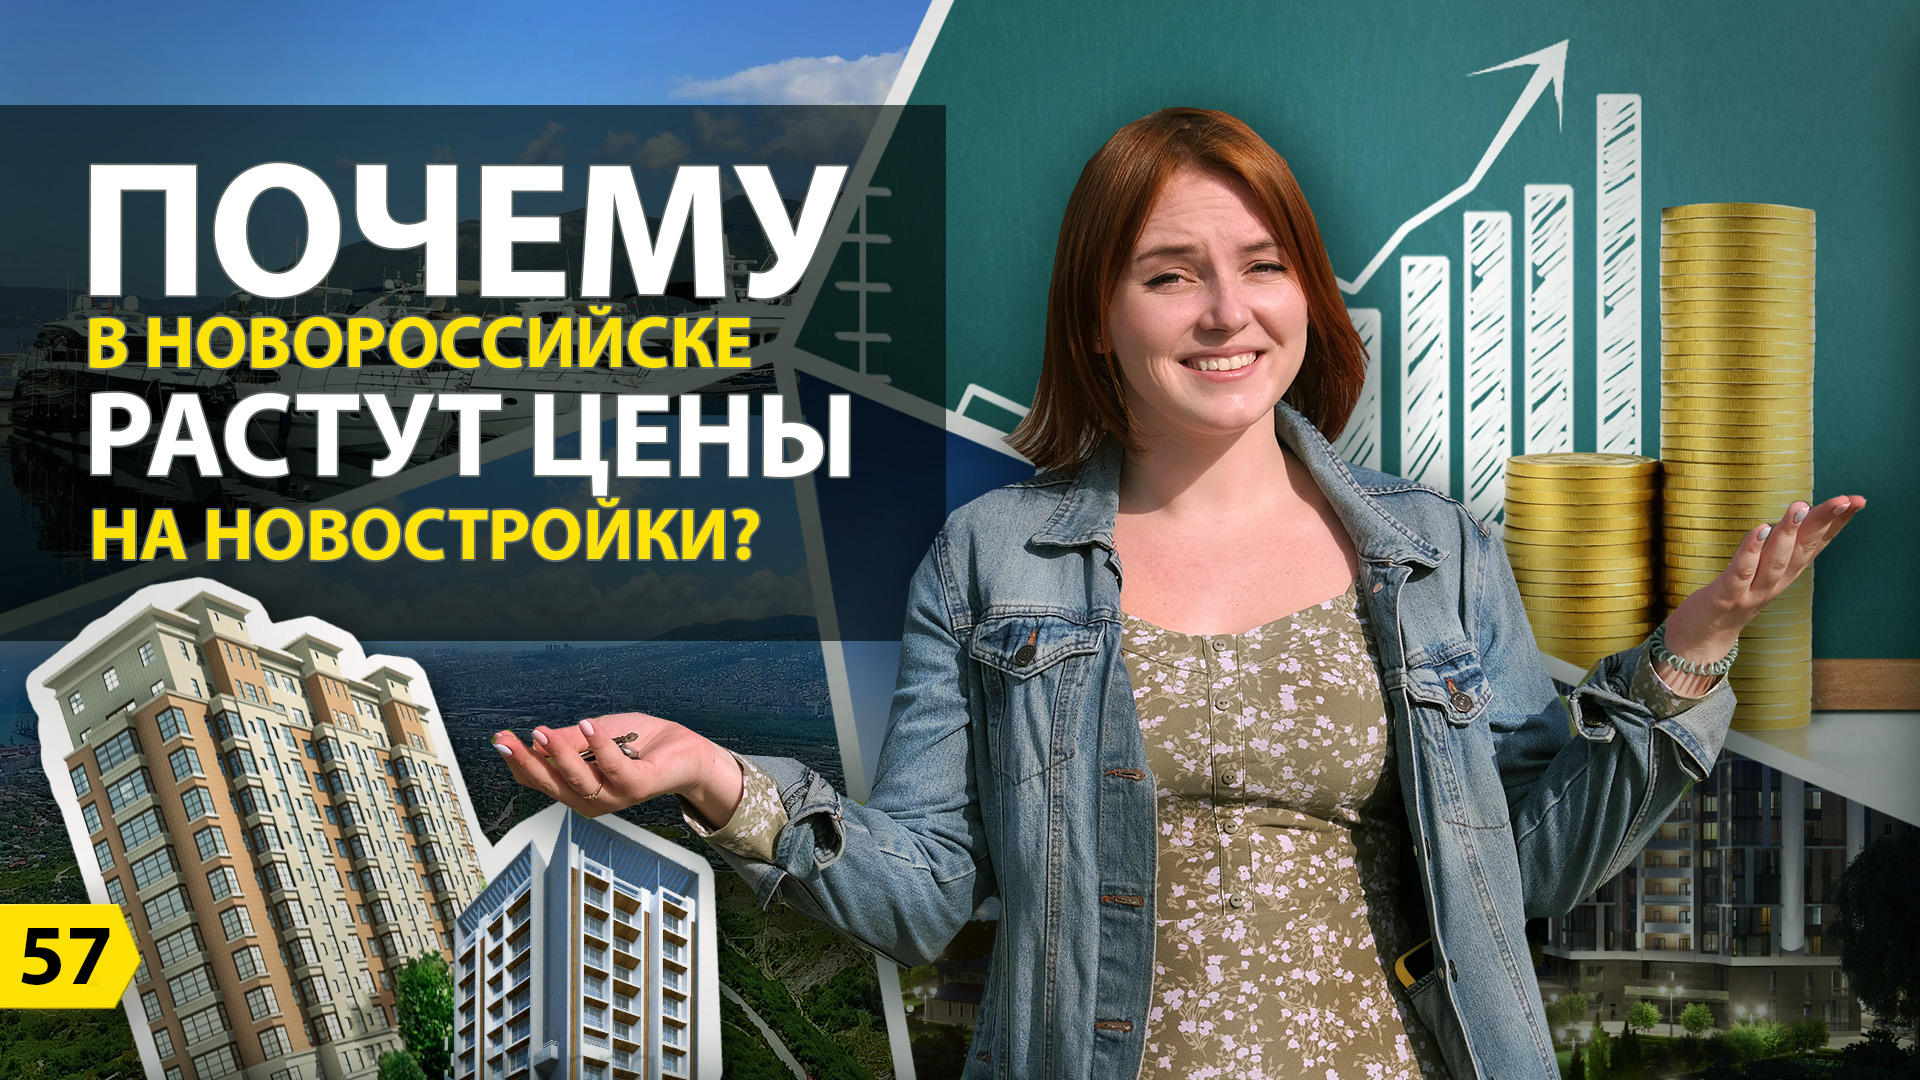 Почему в Новороссийске растут цены на новостройки? | Ассоциация застройщиков